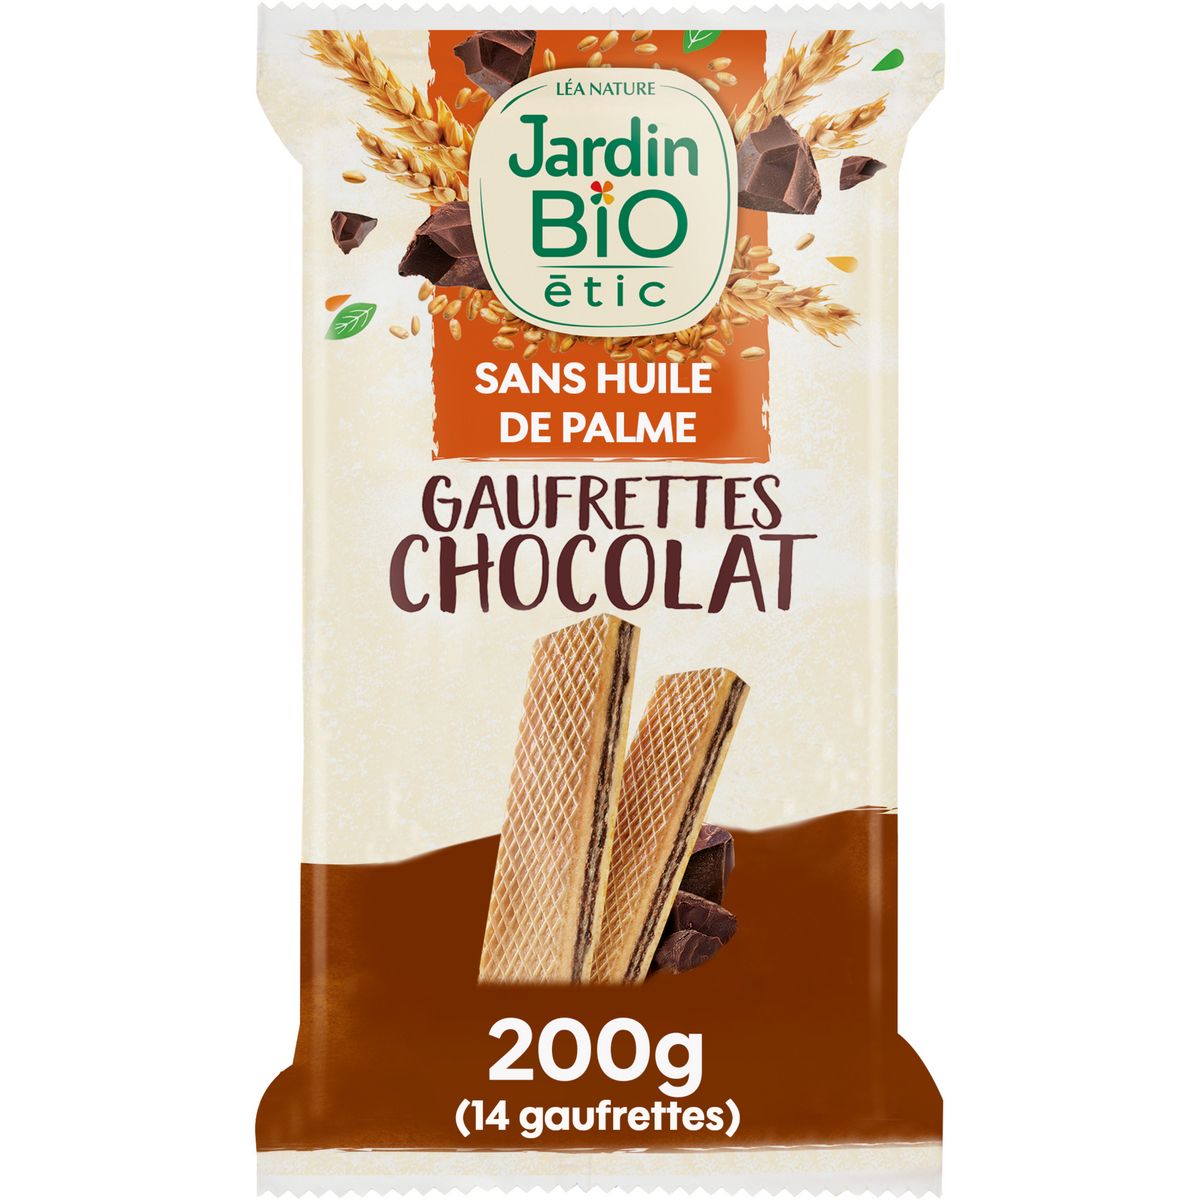 JARDIN BIO ETIC Gaufrettes croustillantes au chocolat vegan sans lactose ss huile de palme 14 gaufrettes 200g